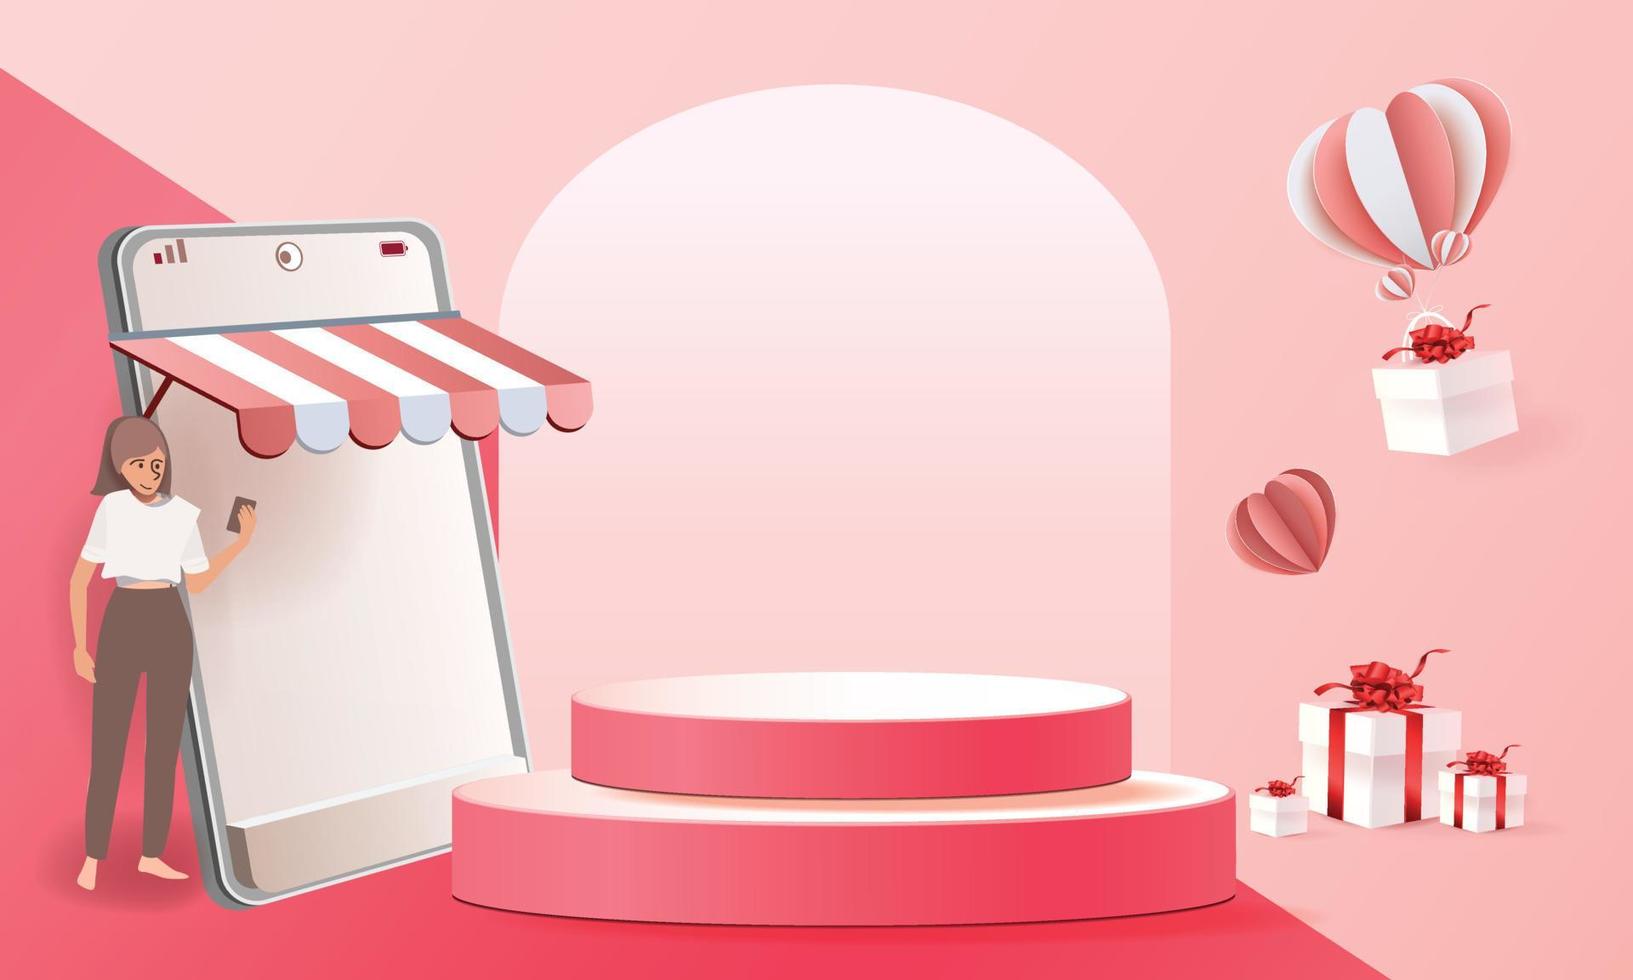 compras en línea en el teléfono con el vector del ejemplo de la caja de regalos del fondo rosado moderno del arte del papel del podio.